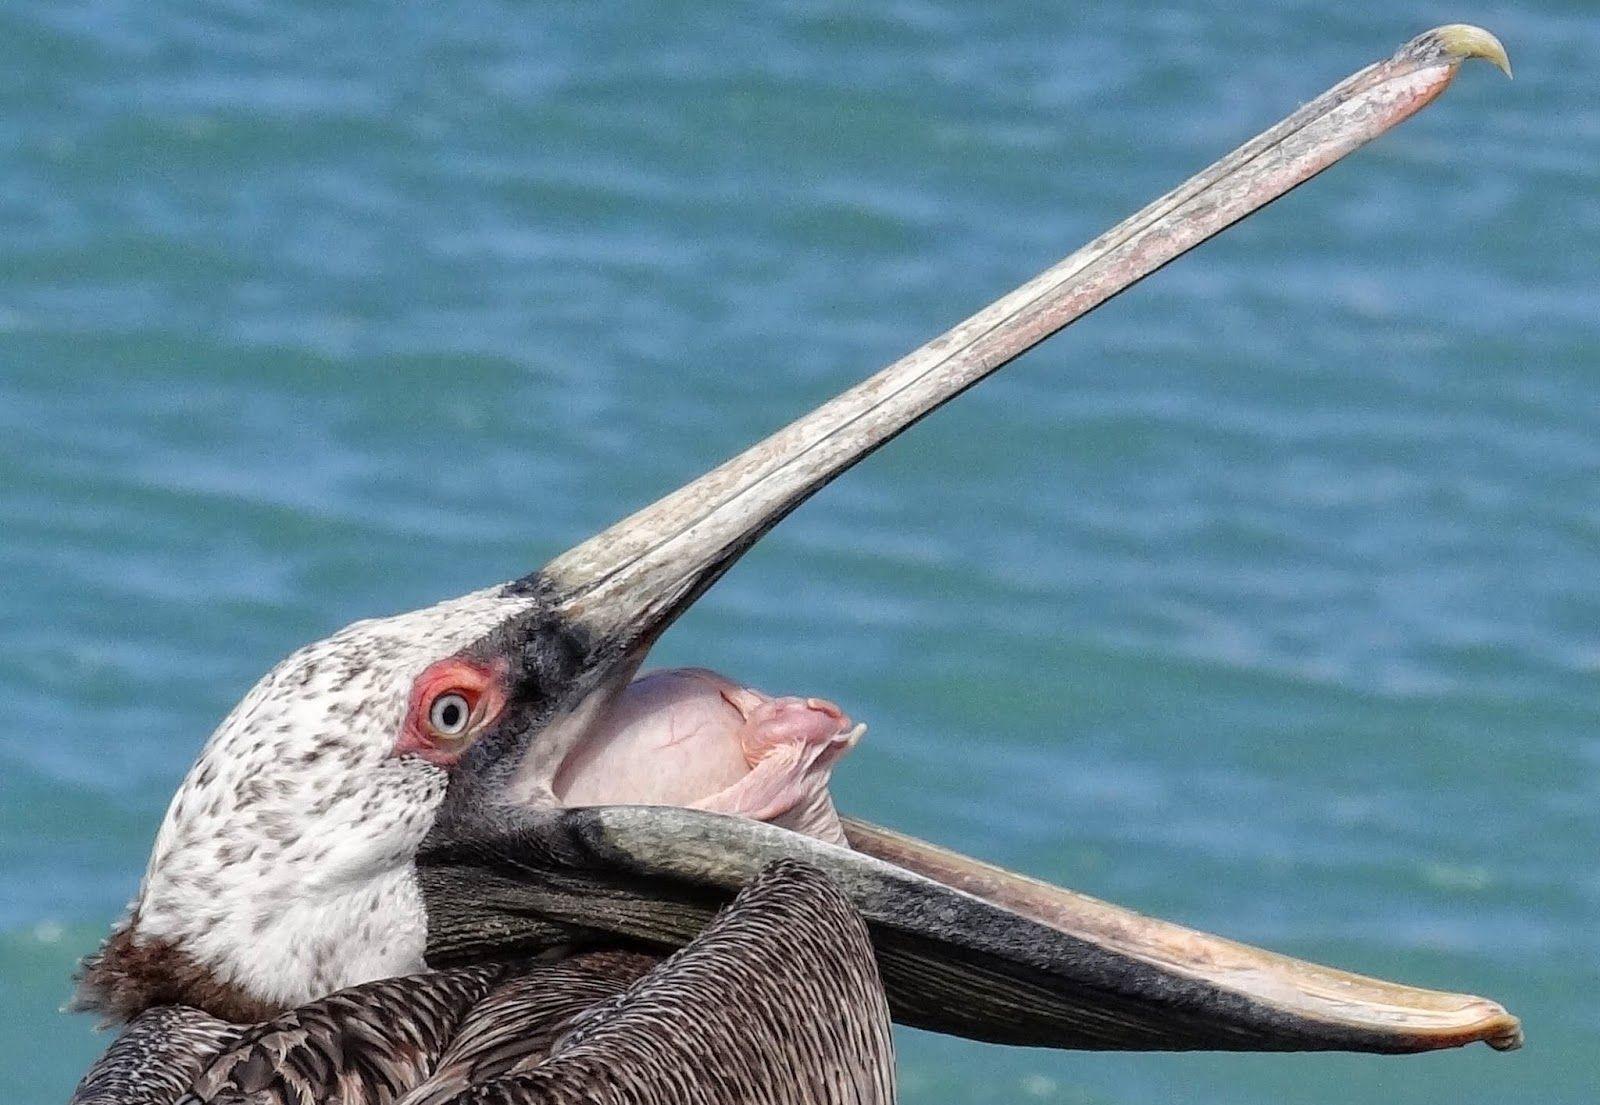 WildLife: The Pelican Beautiful Bird Wallpaper & Facts 2014